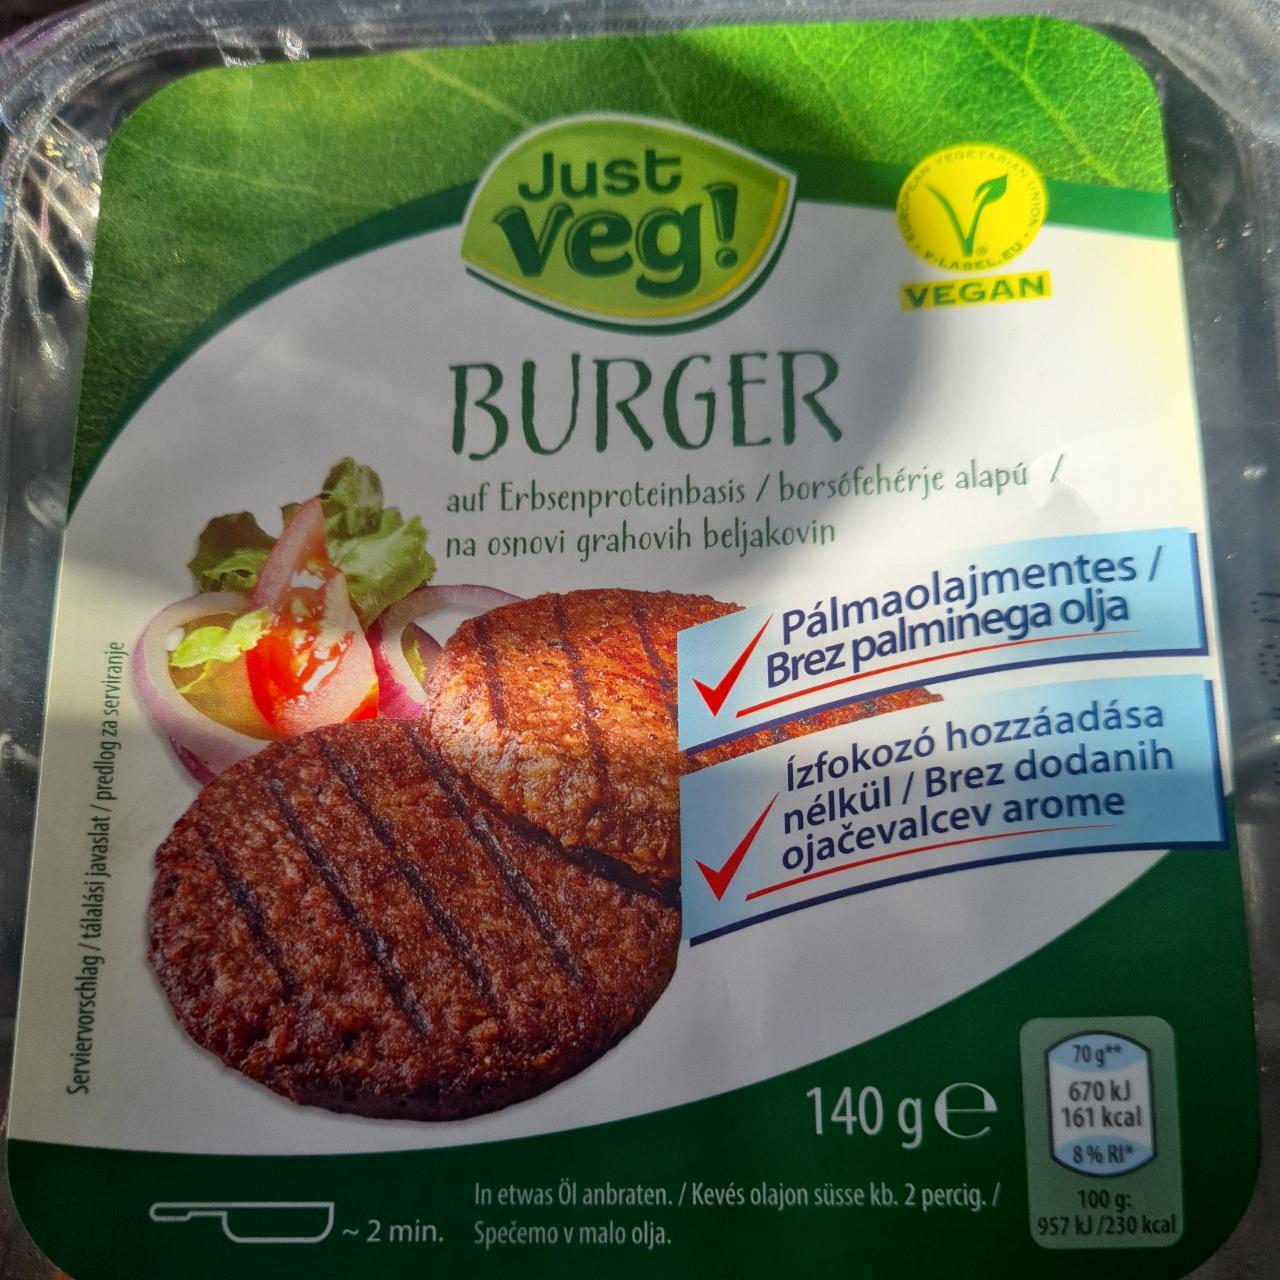 Képek - Vegán borsófehérje burger Just Veg!